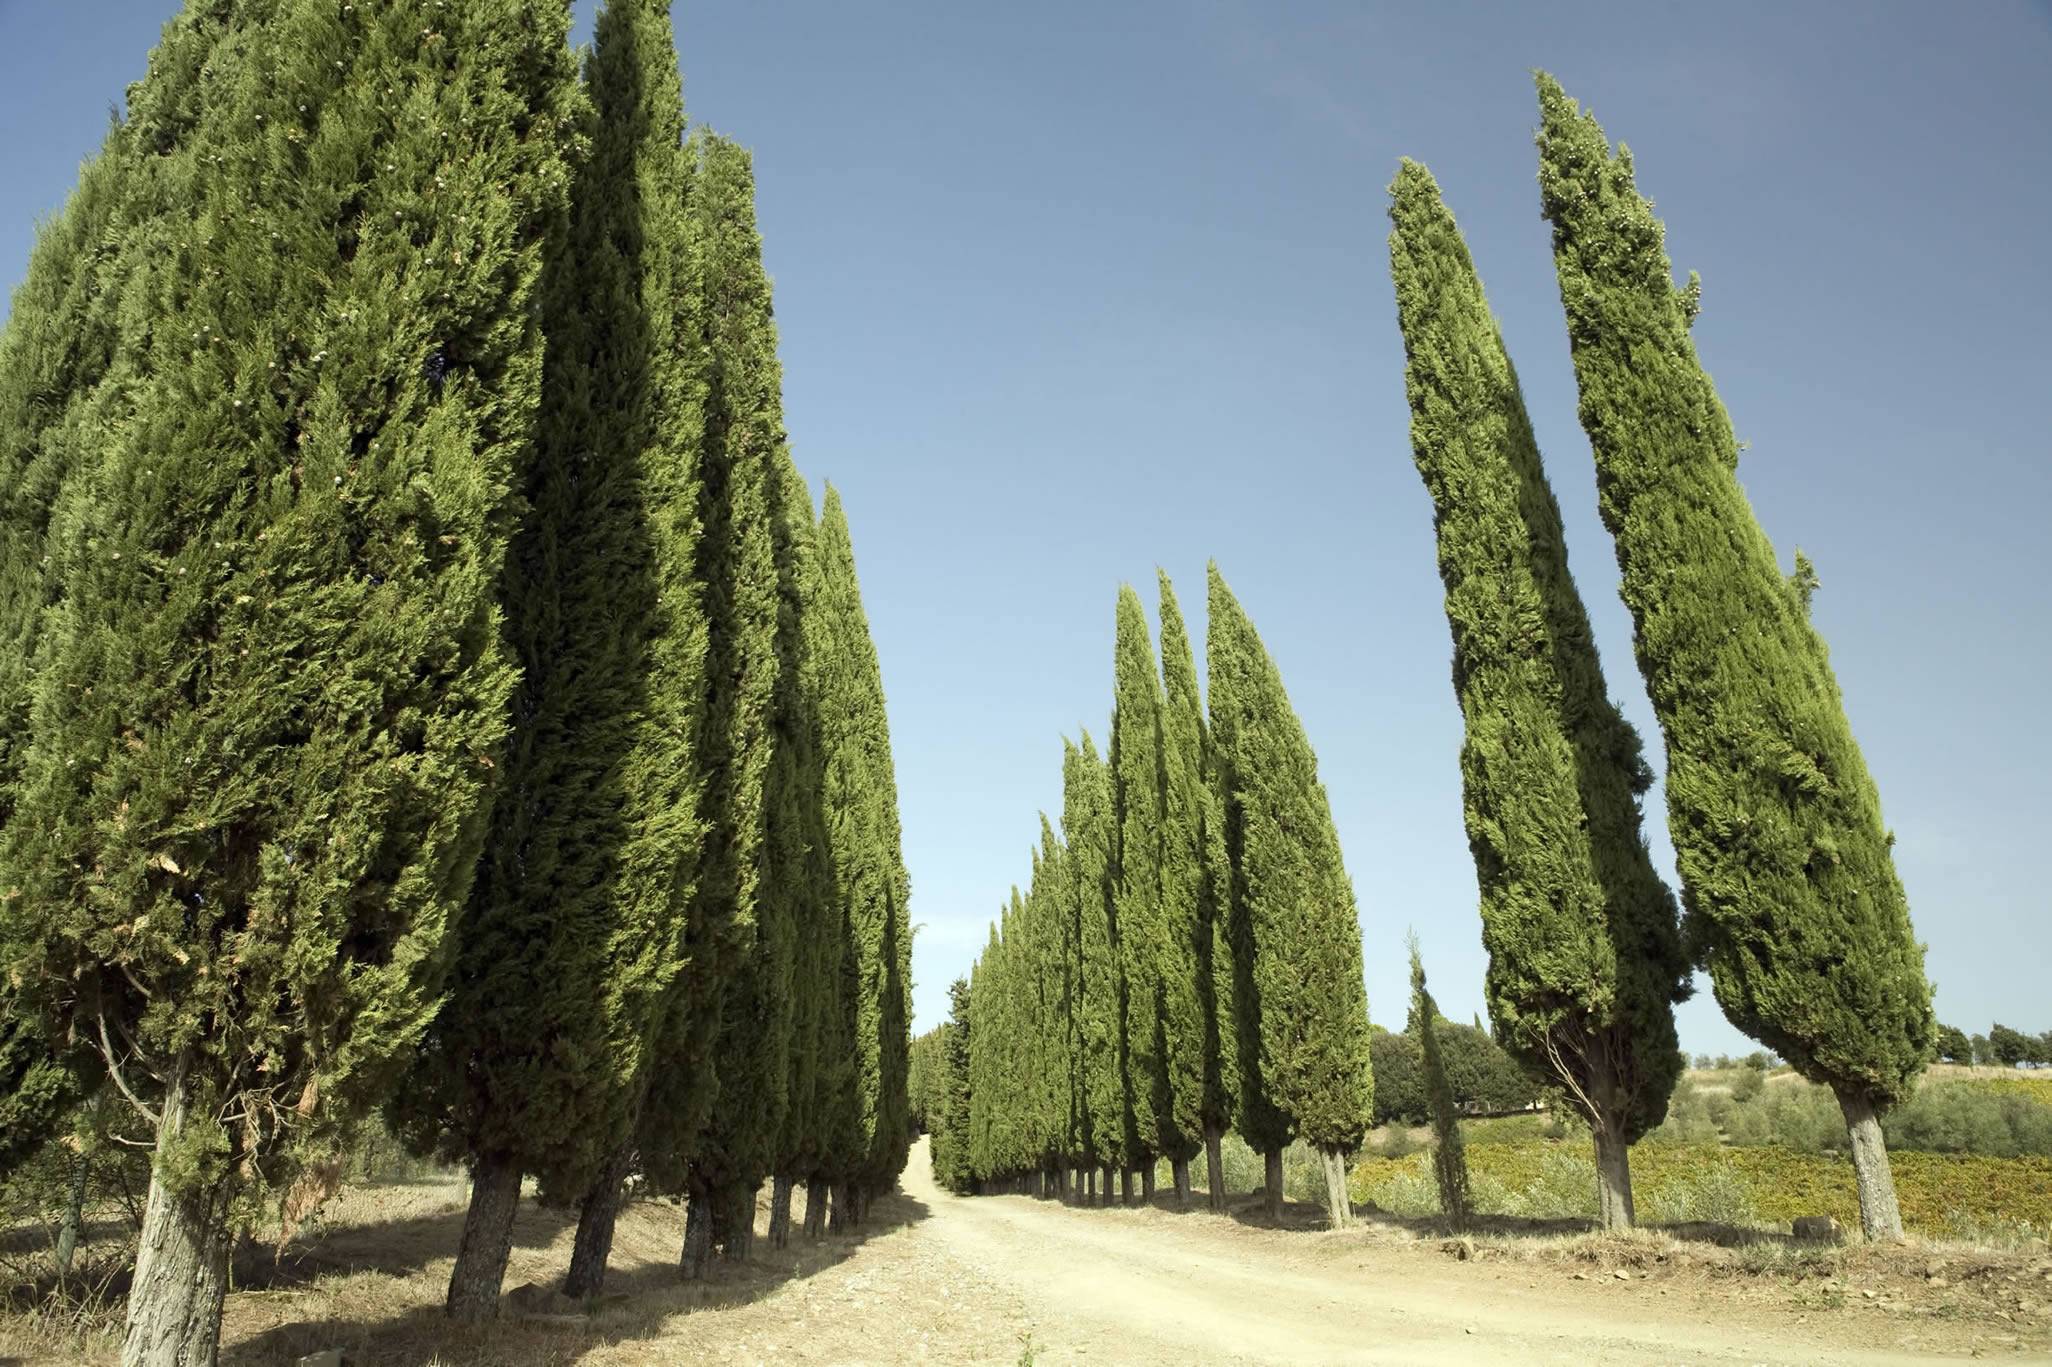 Хвойное дерево кипарис: подробное описание и фото того, как он выглядит